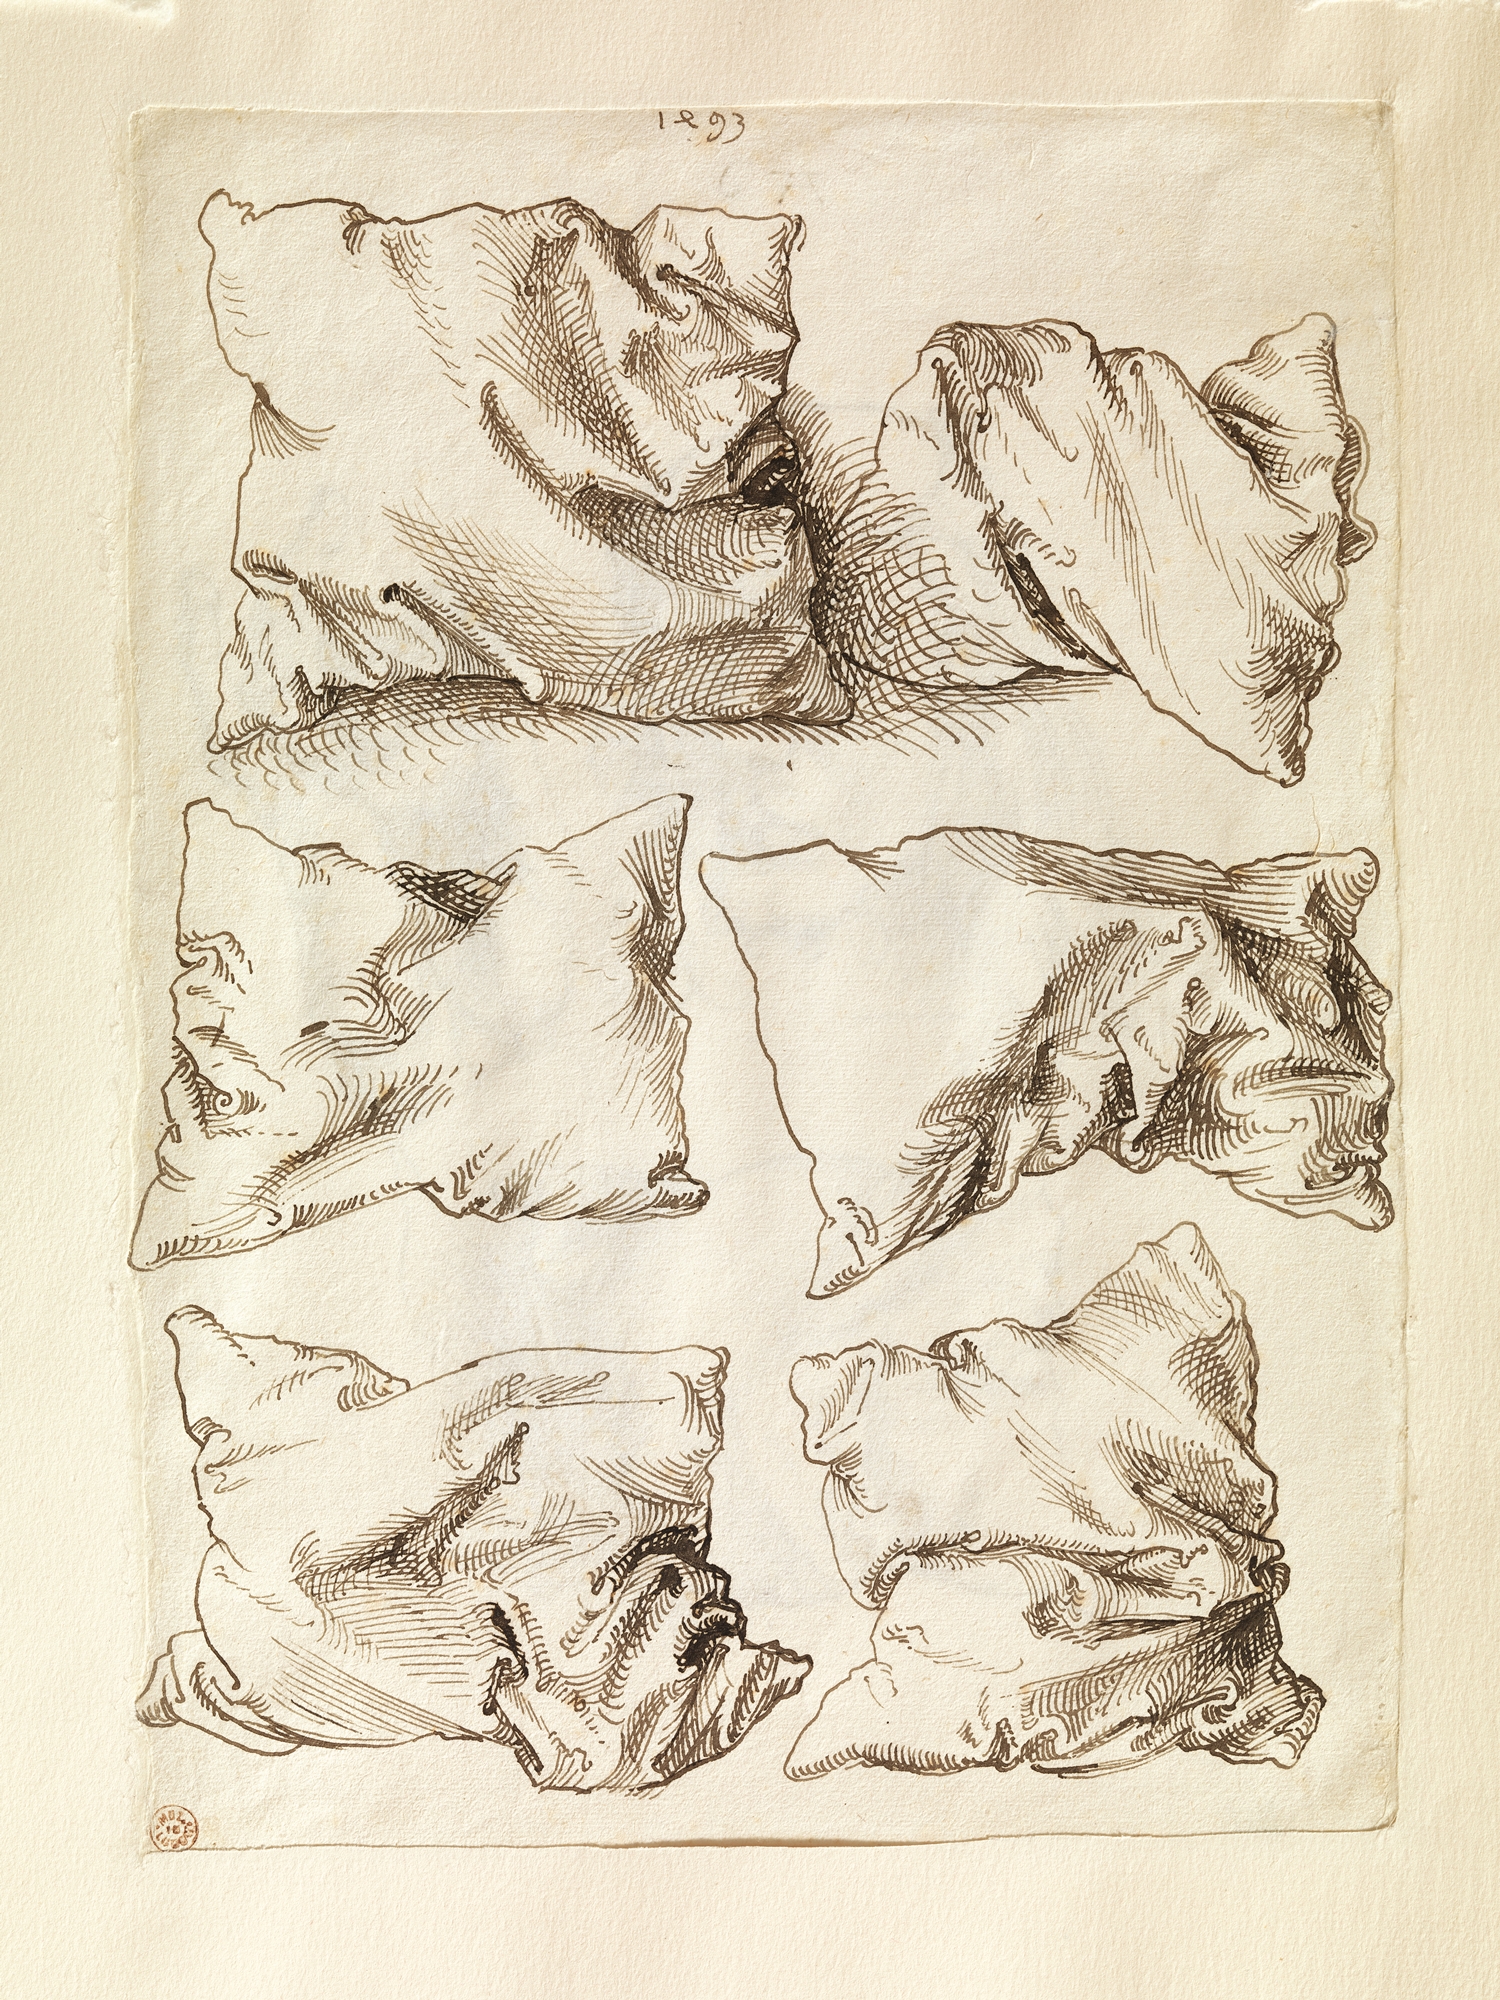 Six Studies of Pillows by Albrecht Dürer - 1493 - 27.8 x 20.2 cm Metropolitan Museum of Art